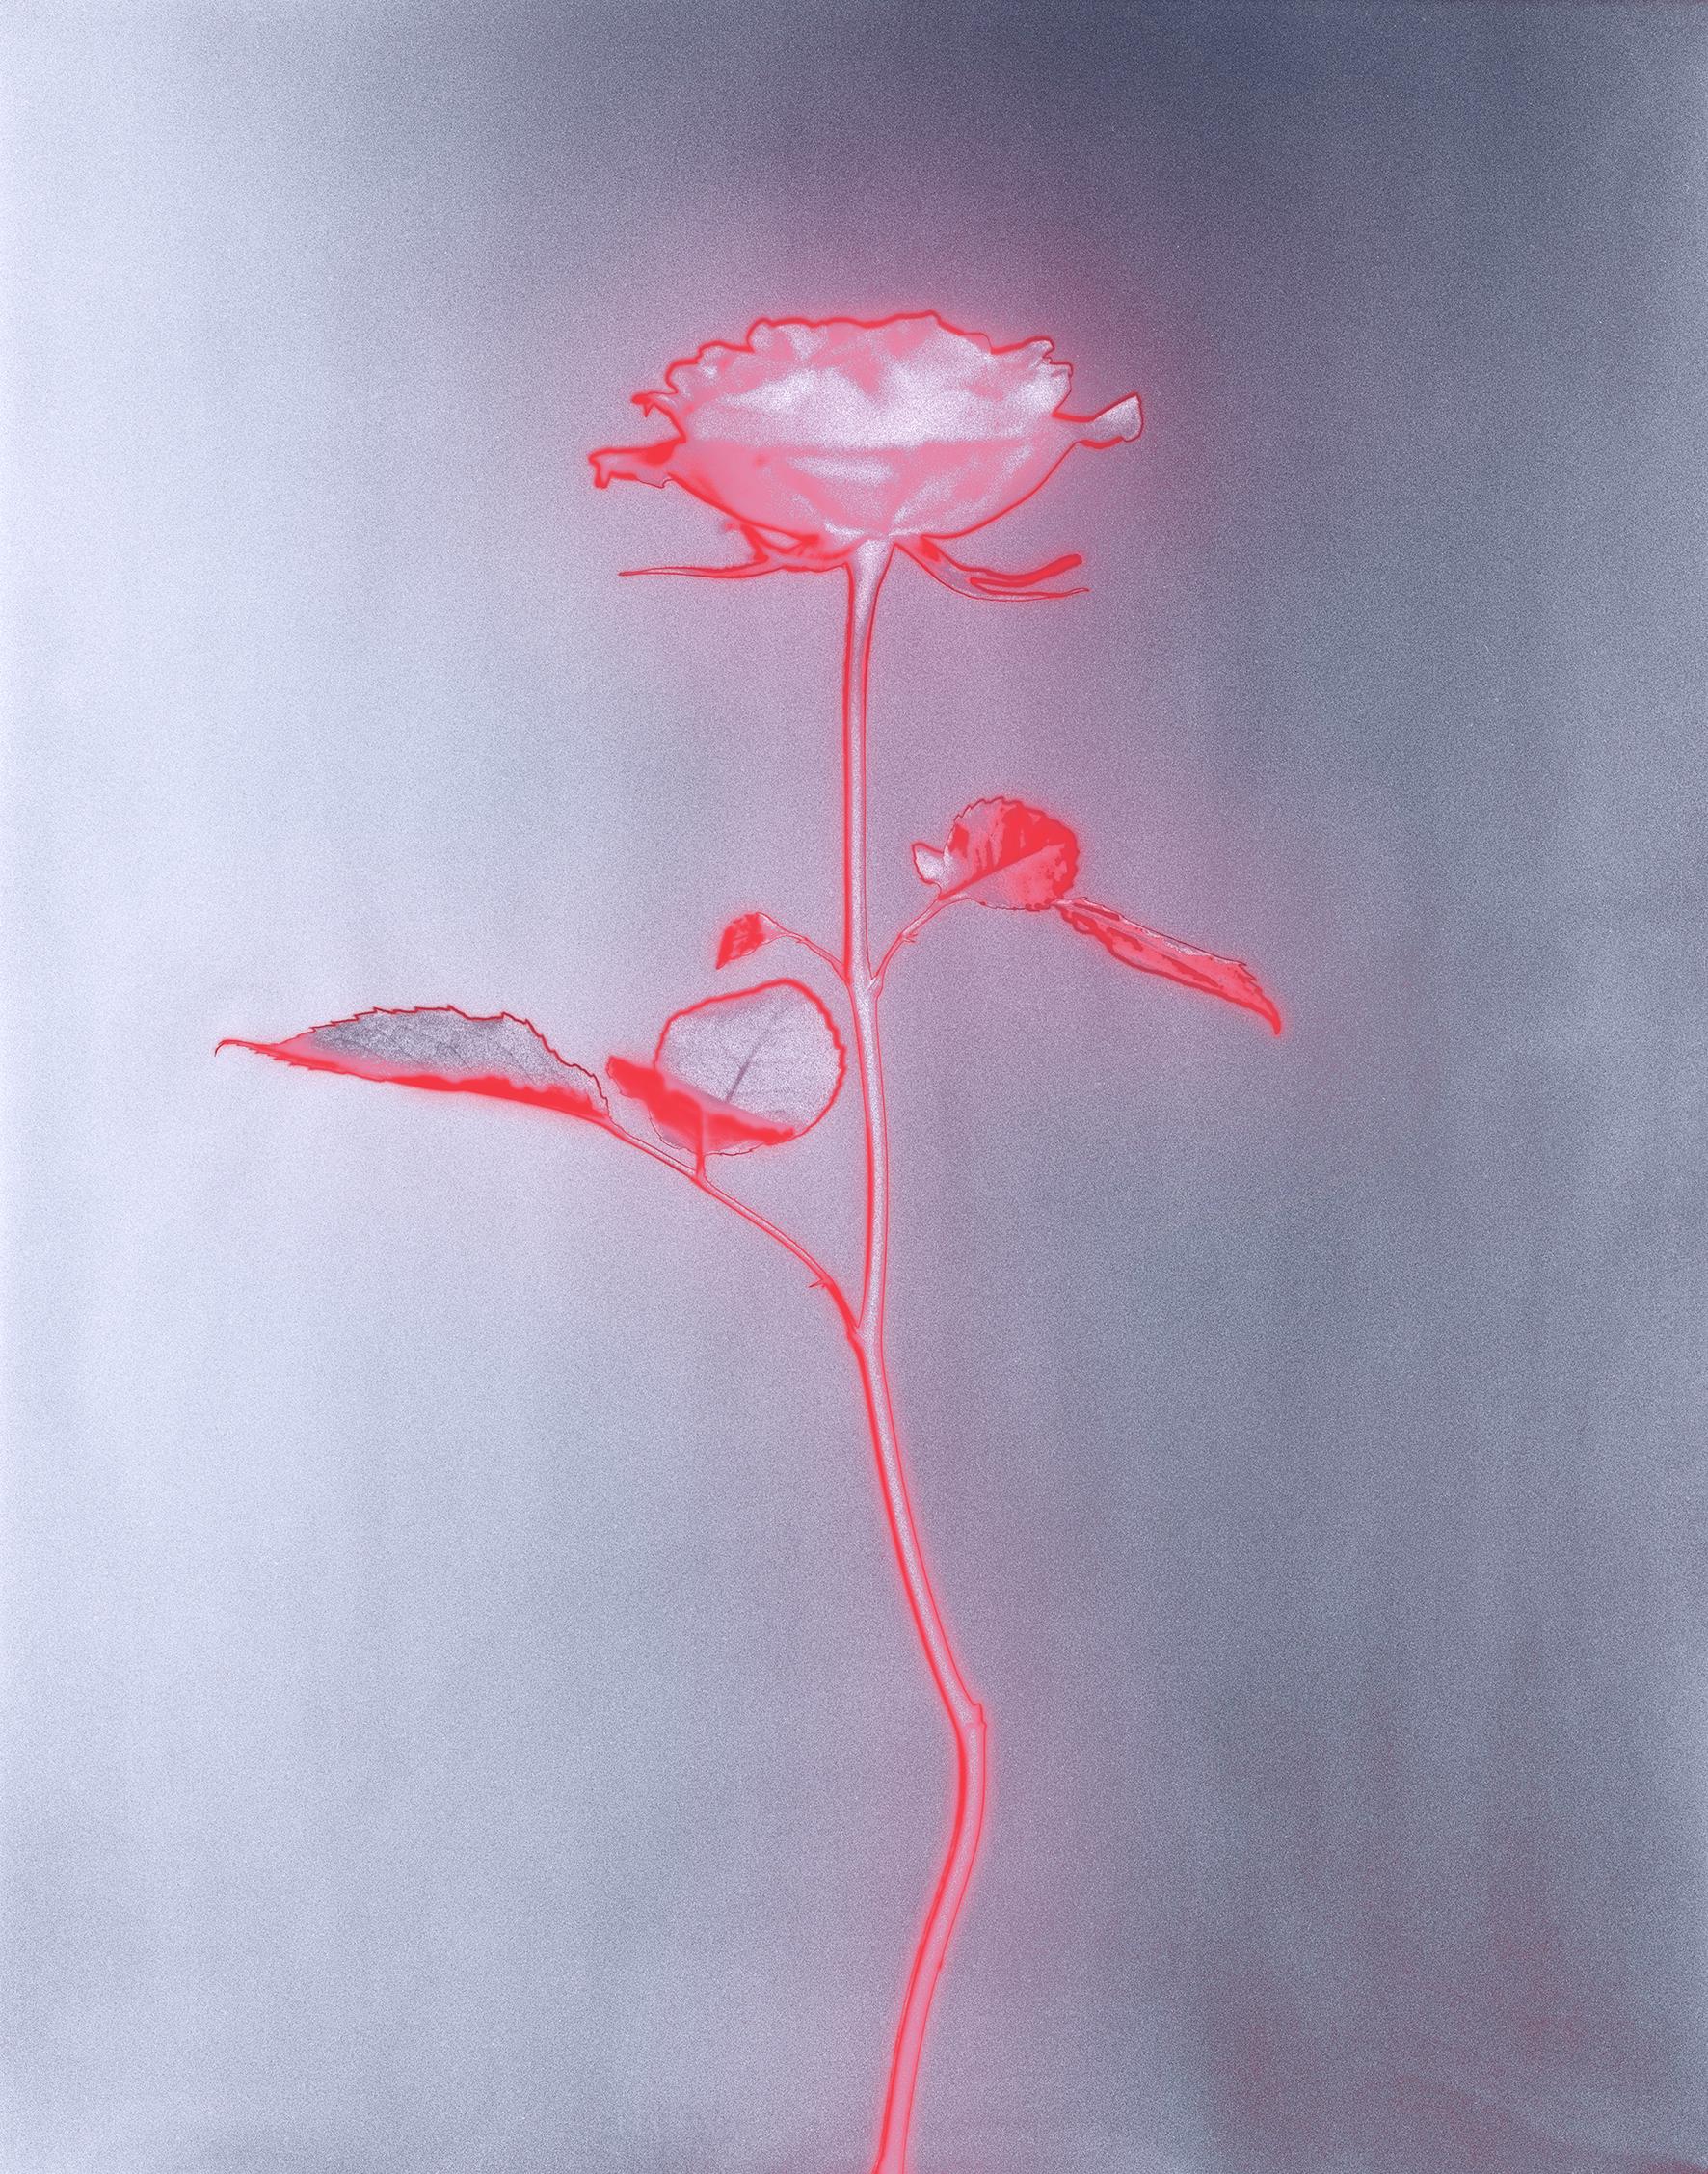 Ugne Pouwell Still-Life Photograph – „Rose glow“ eine analoge Stillleben-Fotografie, zeitgenössische Mischtechnik, rosa/rot